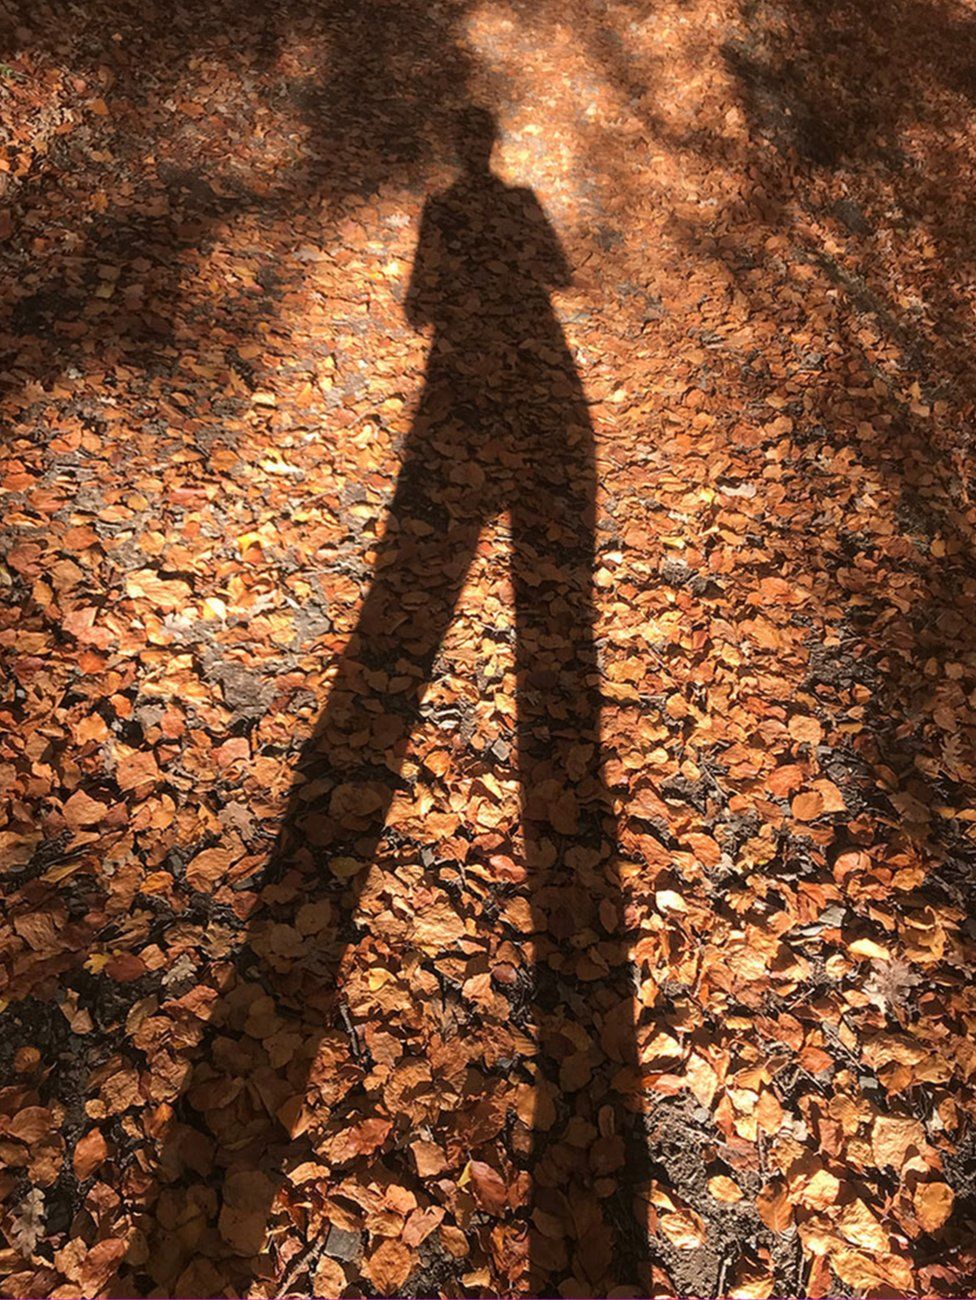 A shadow